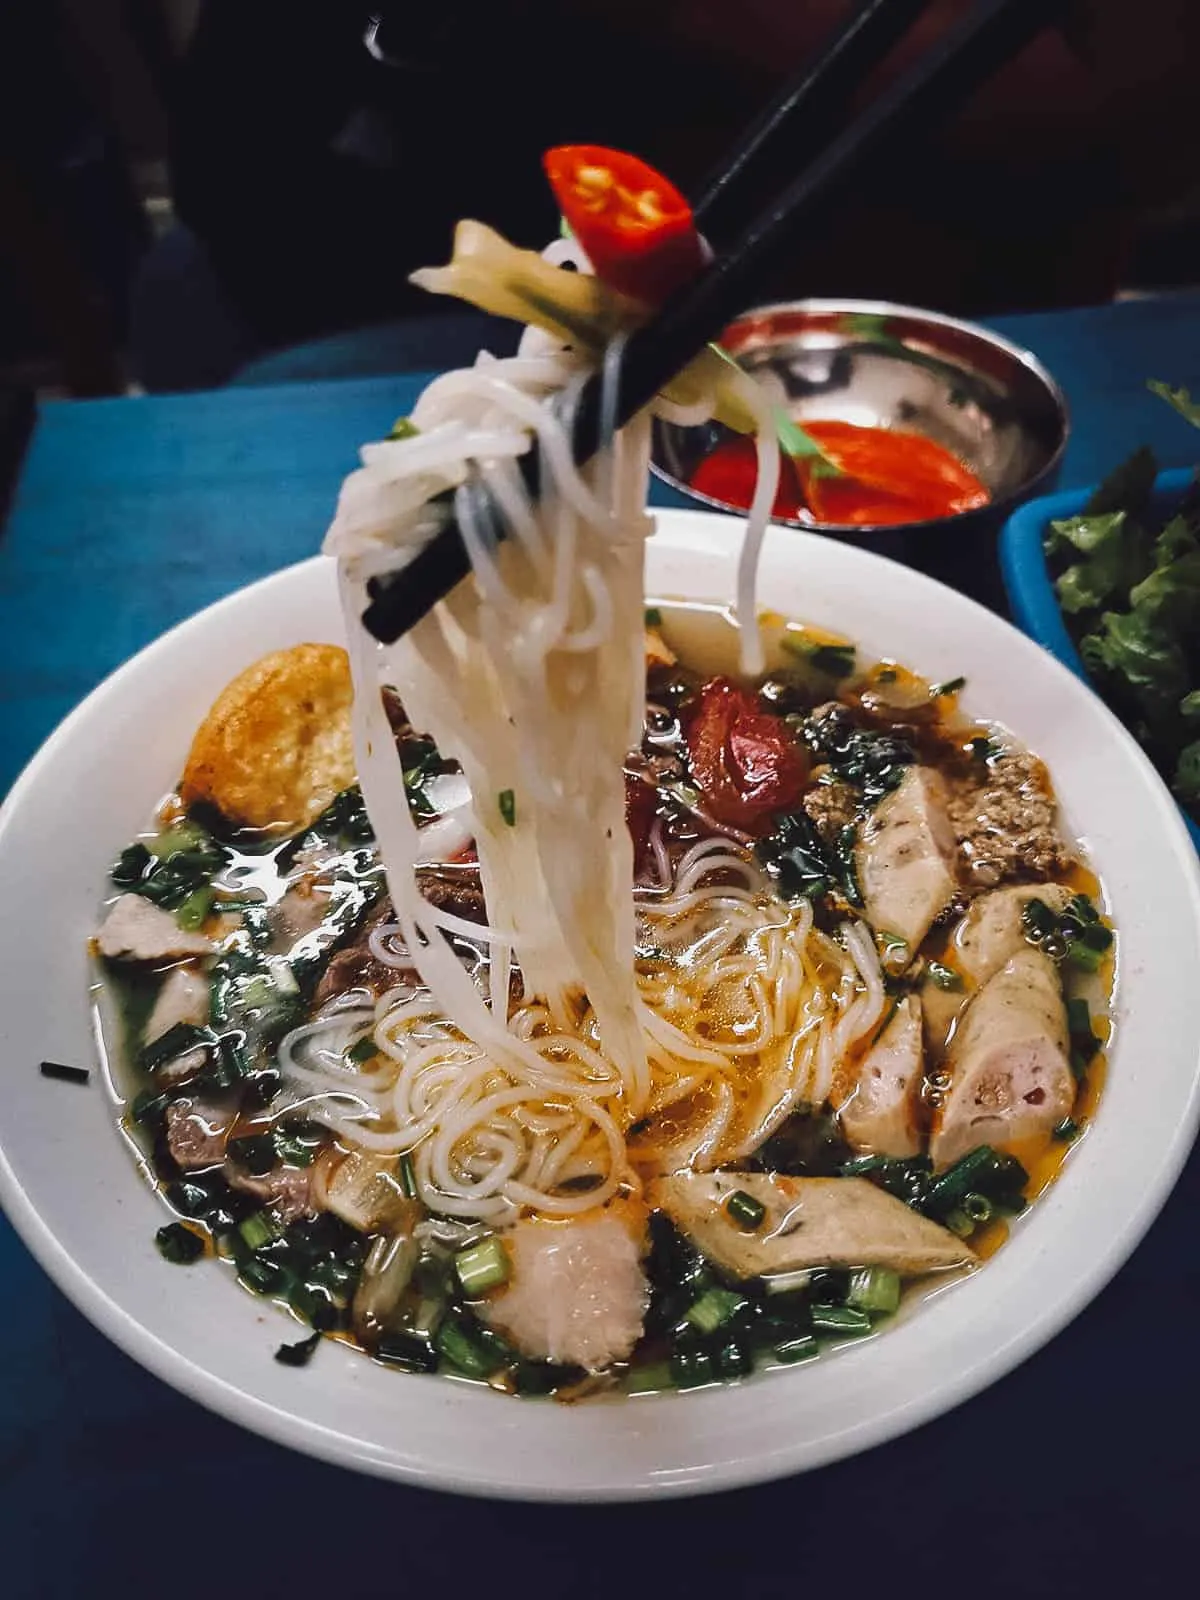 Hanoi Food Tour: Explore Hanoi’s Best Markets with A Chef’s Tour